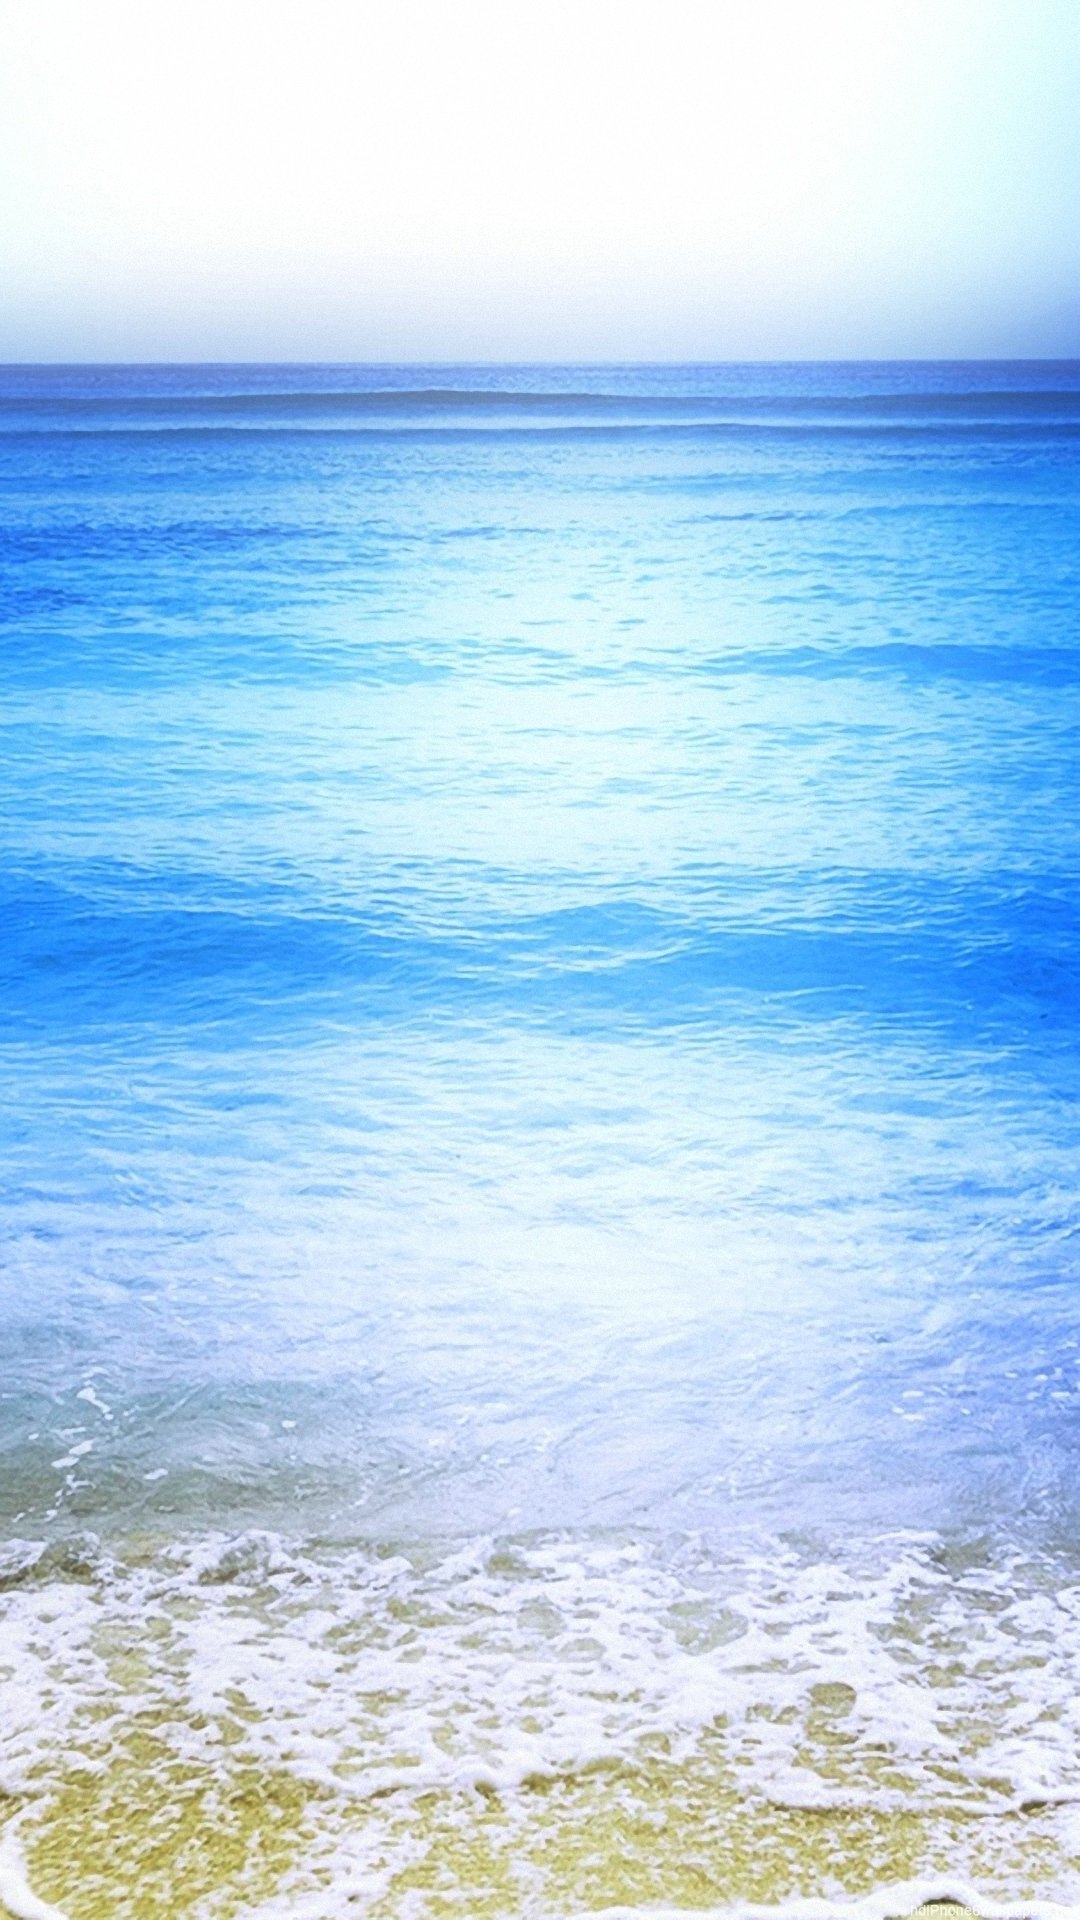 Фон главный экран телефона. Красивое море. Море вертикальное. Красивый фон на телефон. Спокойное море.